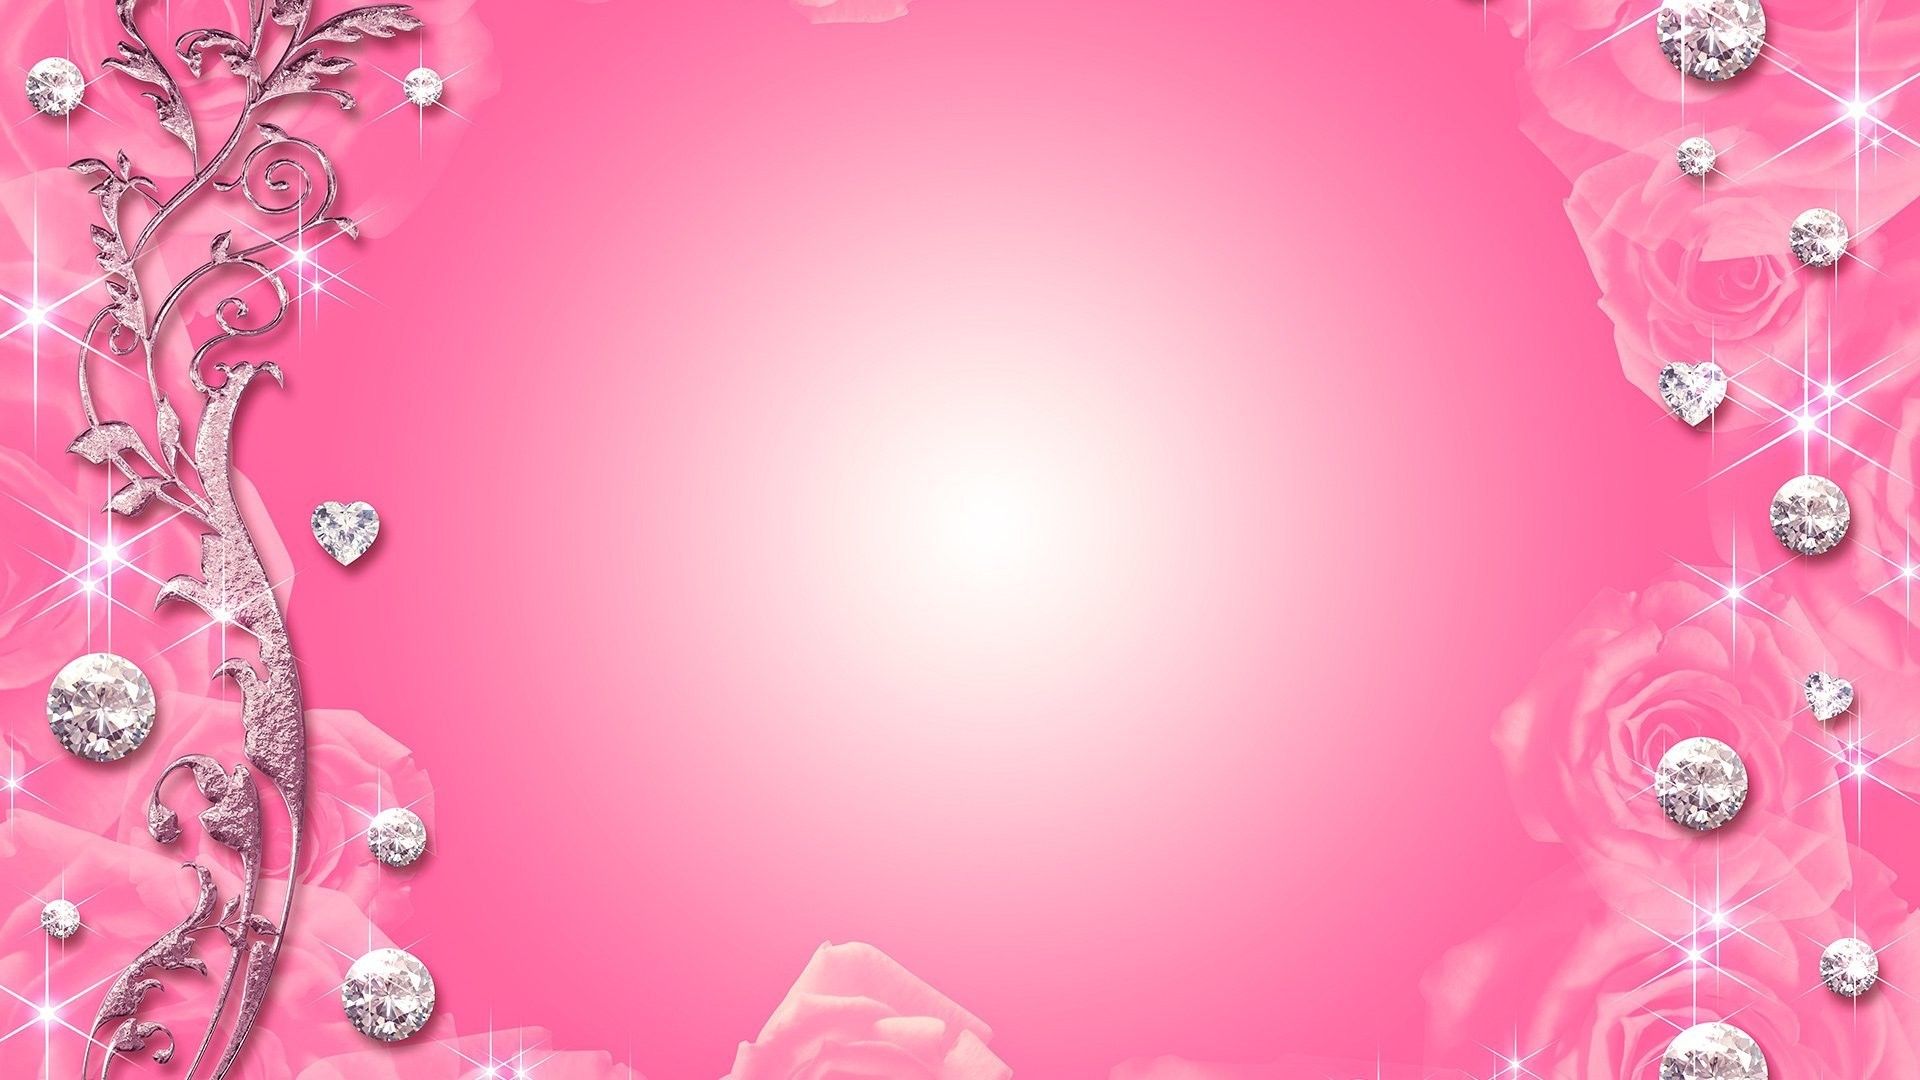 Khung cưới trừu tượng màu hồng miễn phí để tải về: Khung ảnh cưới đã được thăng hoa với thiết kế hình vuông ngộ nghĩnh, màu hồng nữ tính và chủ đề trừu tượng cho bạn tải về miễn phí. Hãy để tình yêu của bạn tràn ngập bức ảnh này!